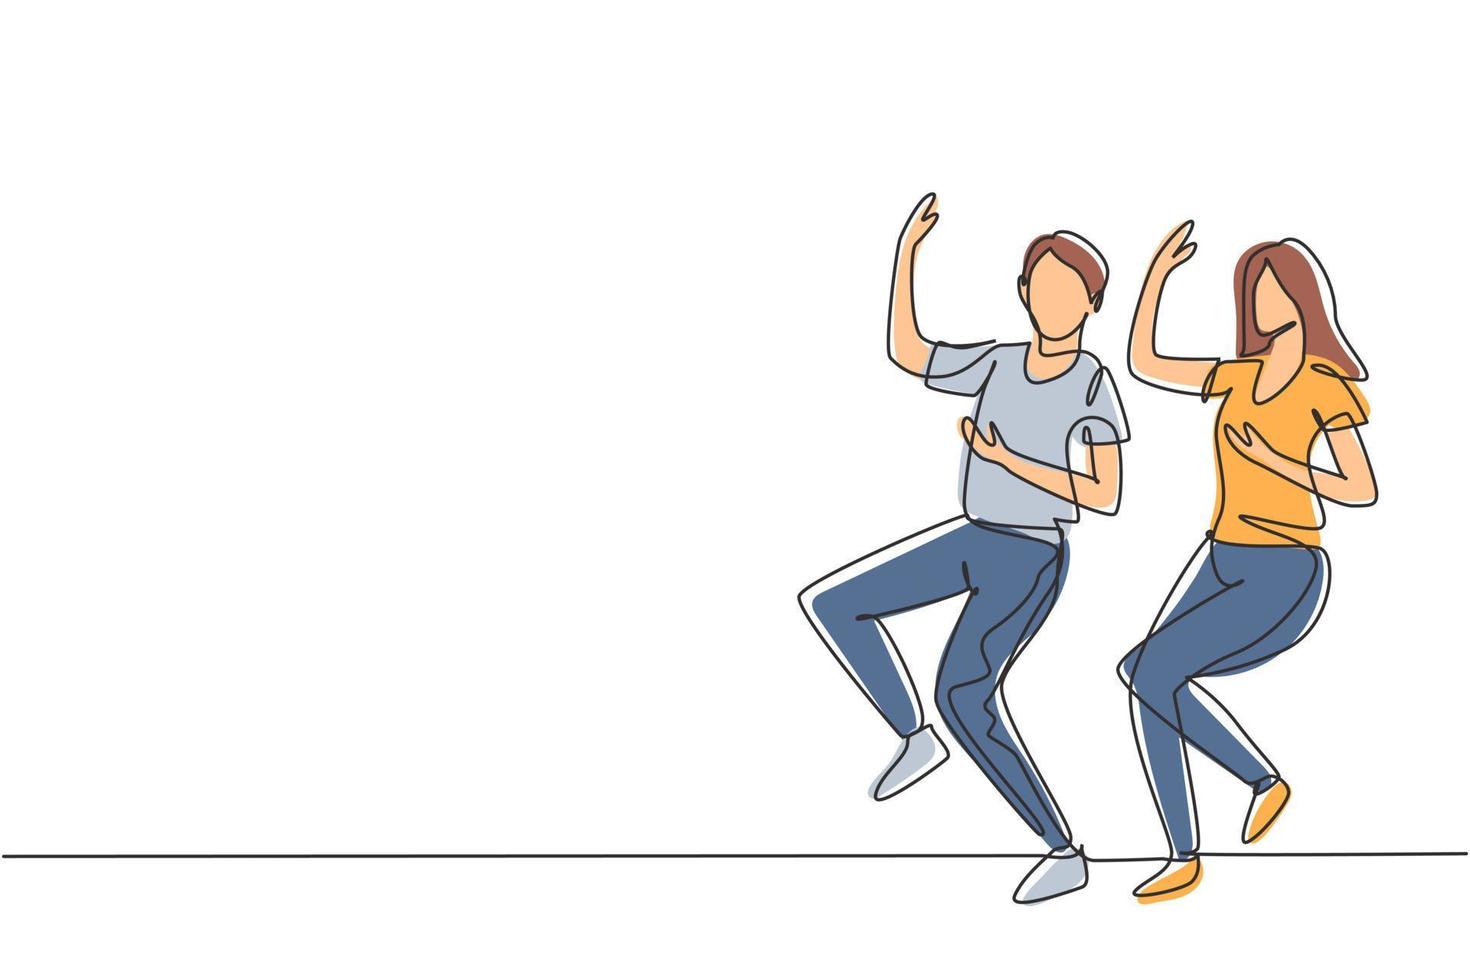 dibujo de línea continua única hombre y mujer bailando lindy hop o swing. personajes masculinos y femeninos bailando en la escuela. pareja feliz. Ilustración de vector de diseño gráfico de dibujo de una línea dinámica